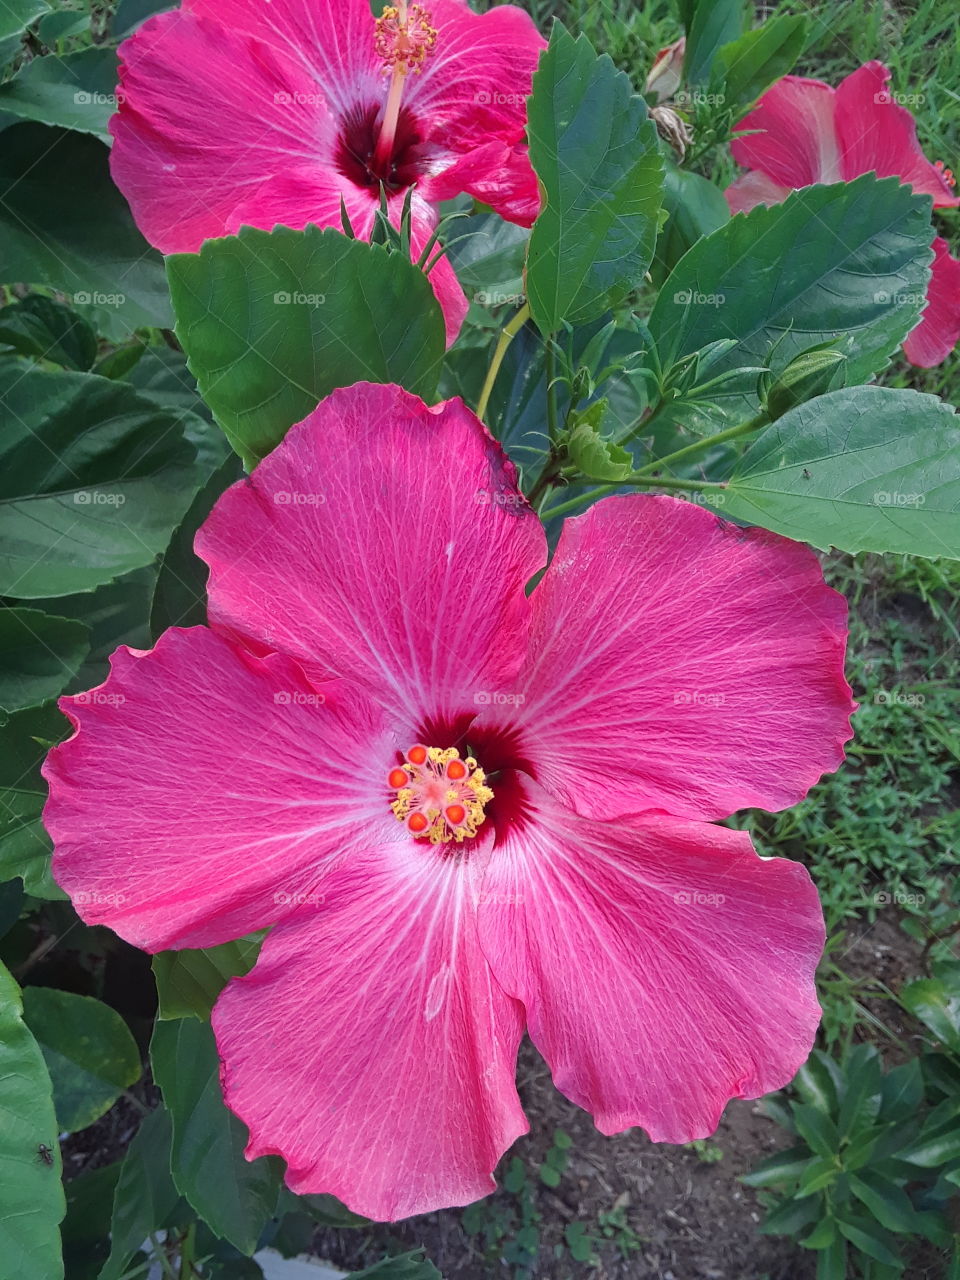 huge pink flower closeup 2